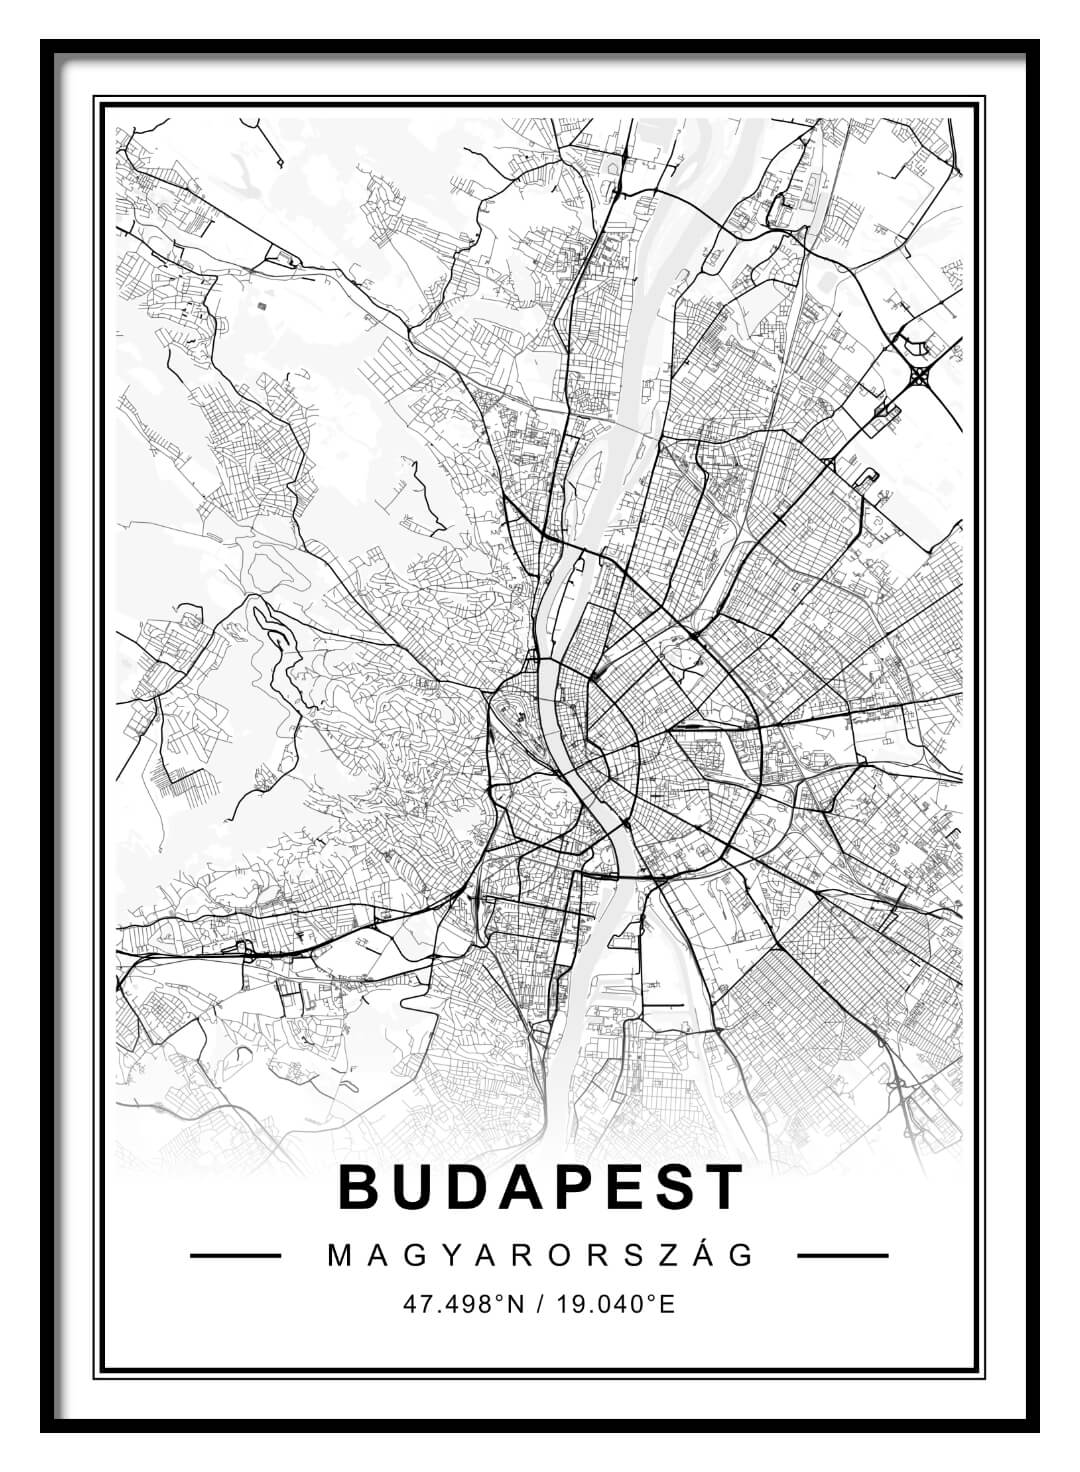 budapest térkép poszter Budapest Terkep Poszter Falikep Skandinav Stilus Nordicoo Hu budapest térkép poszter